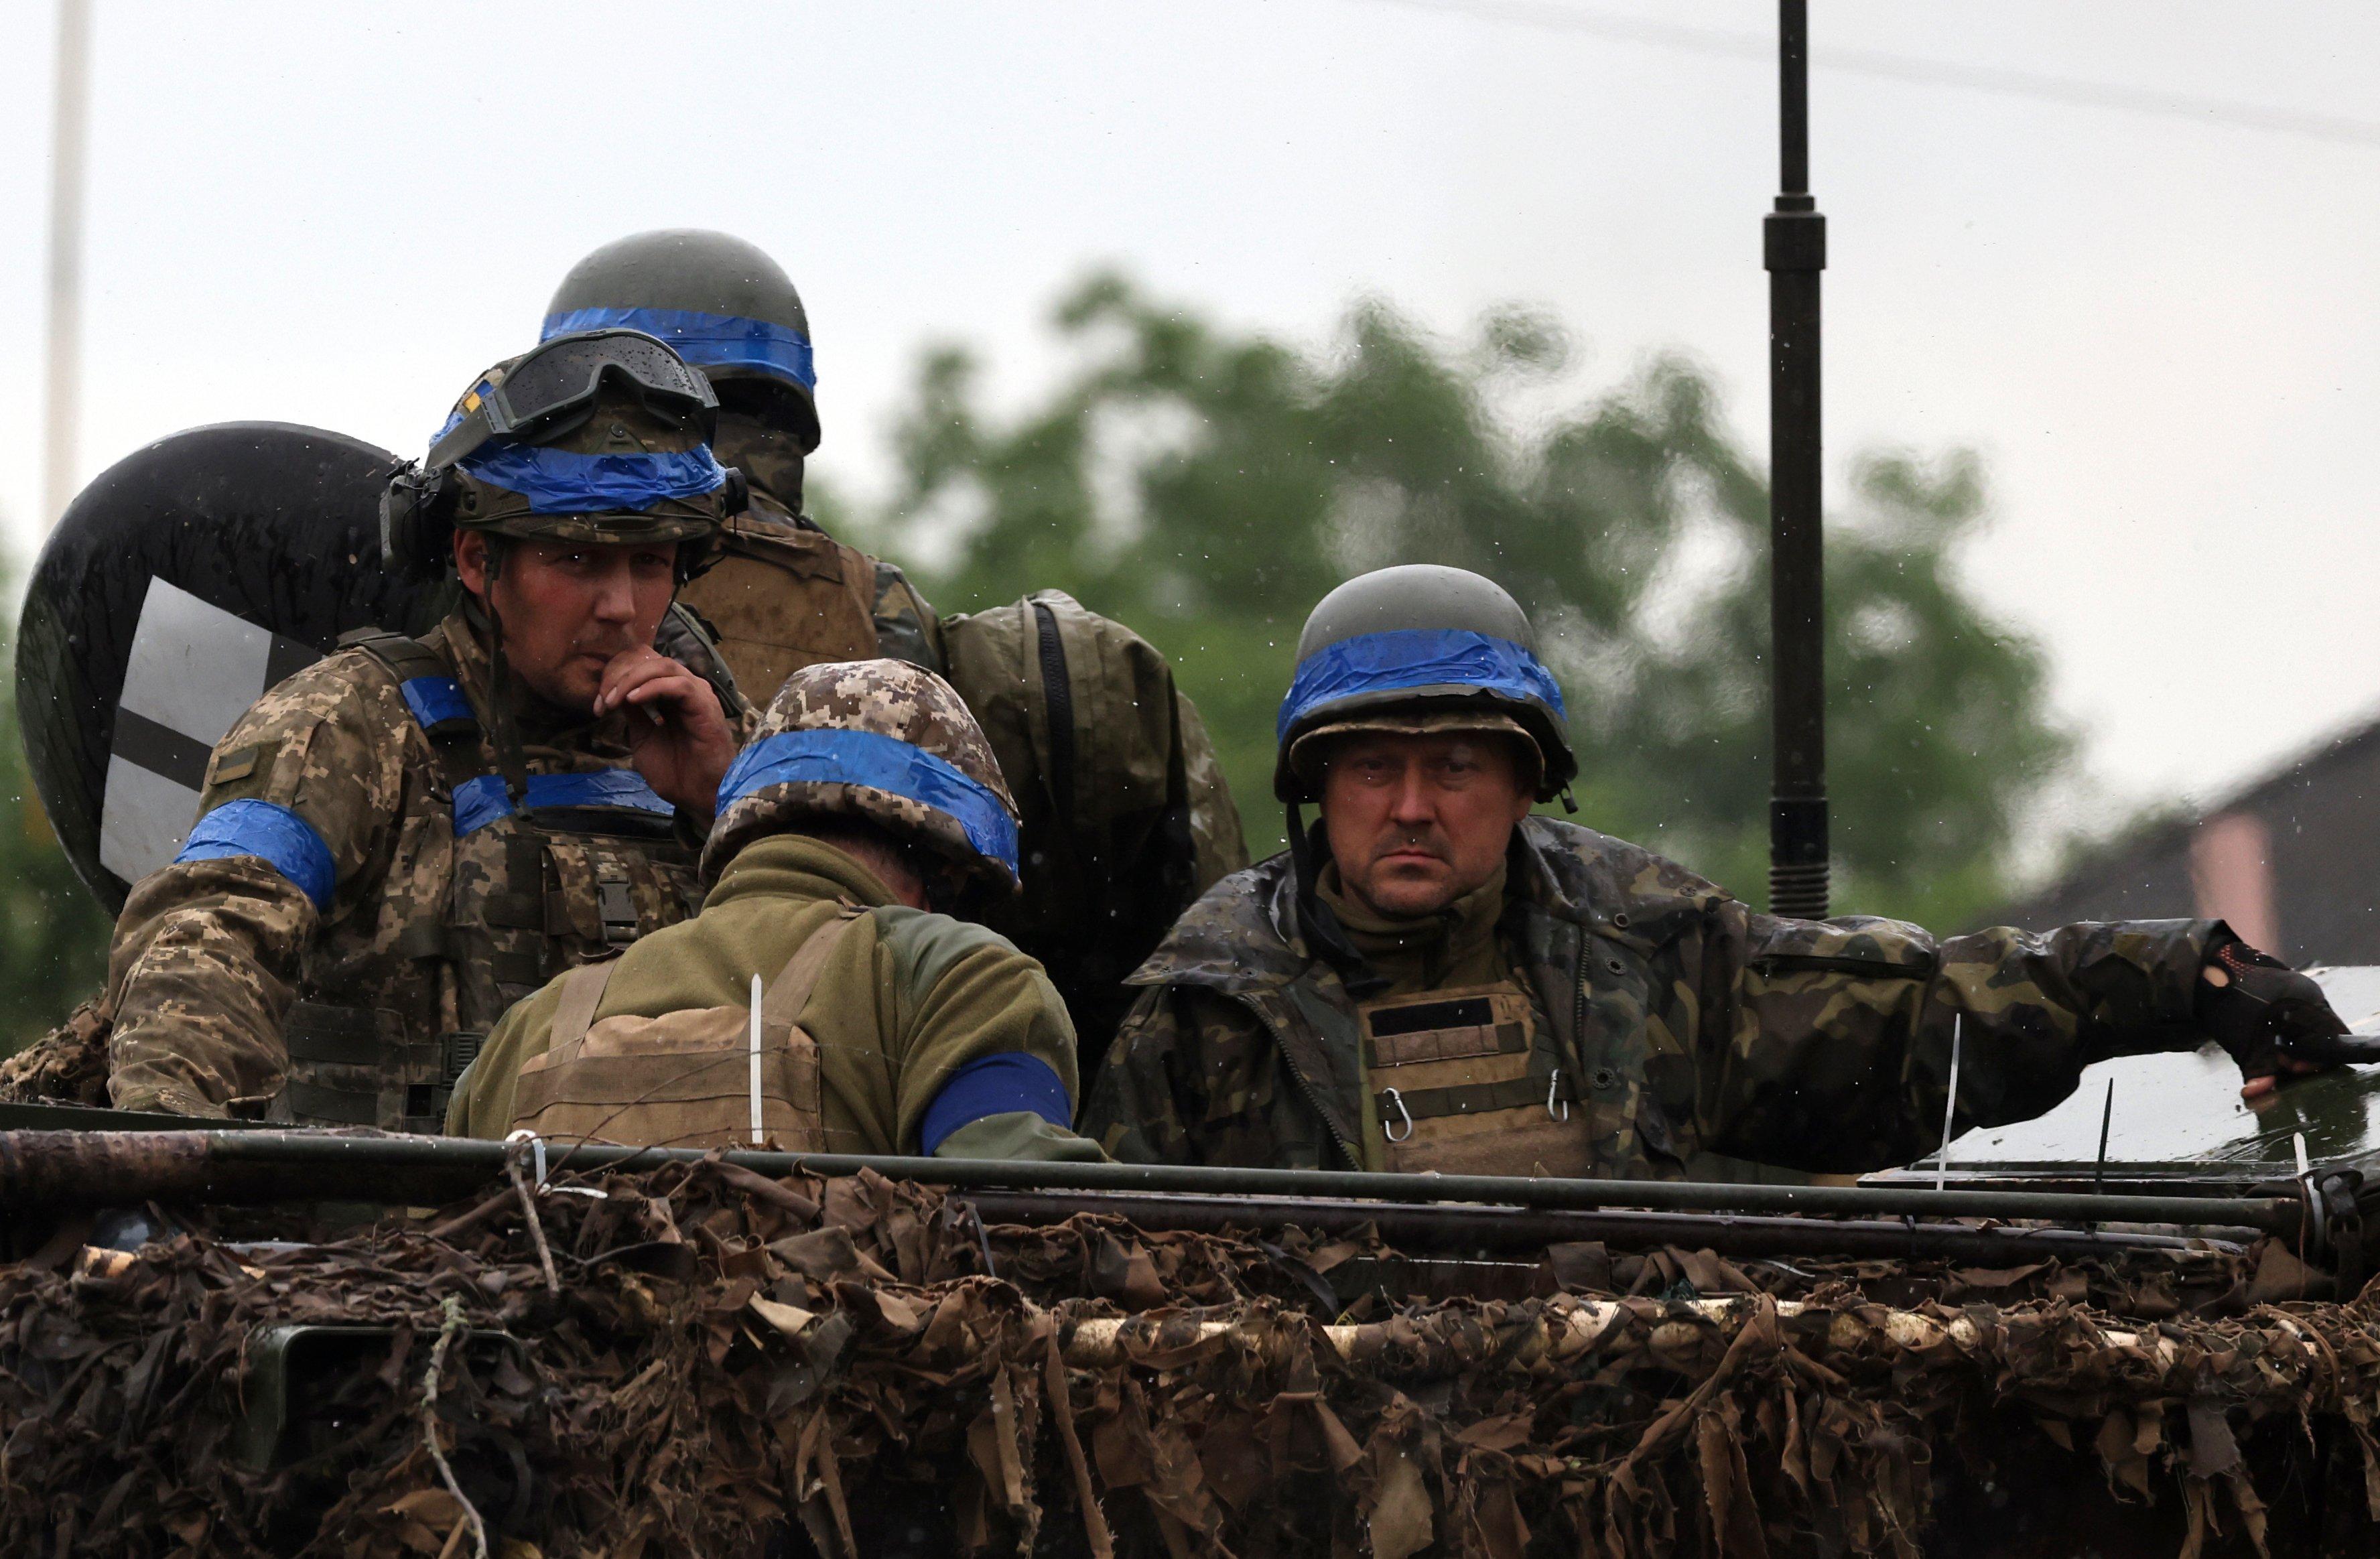 Bărbați într-o mașină blindată, purtând uniforme militare, căști și purtând o centură albastră